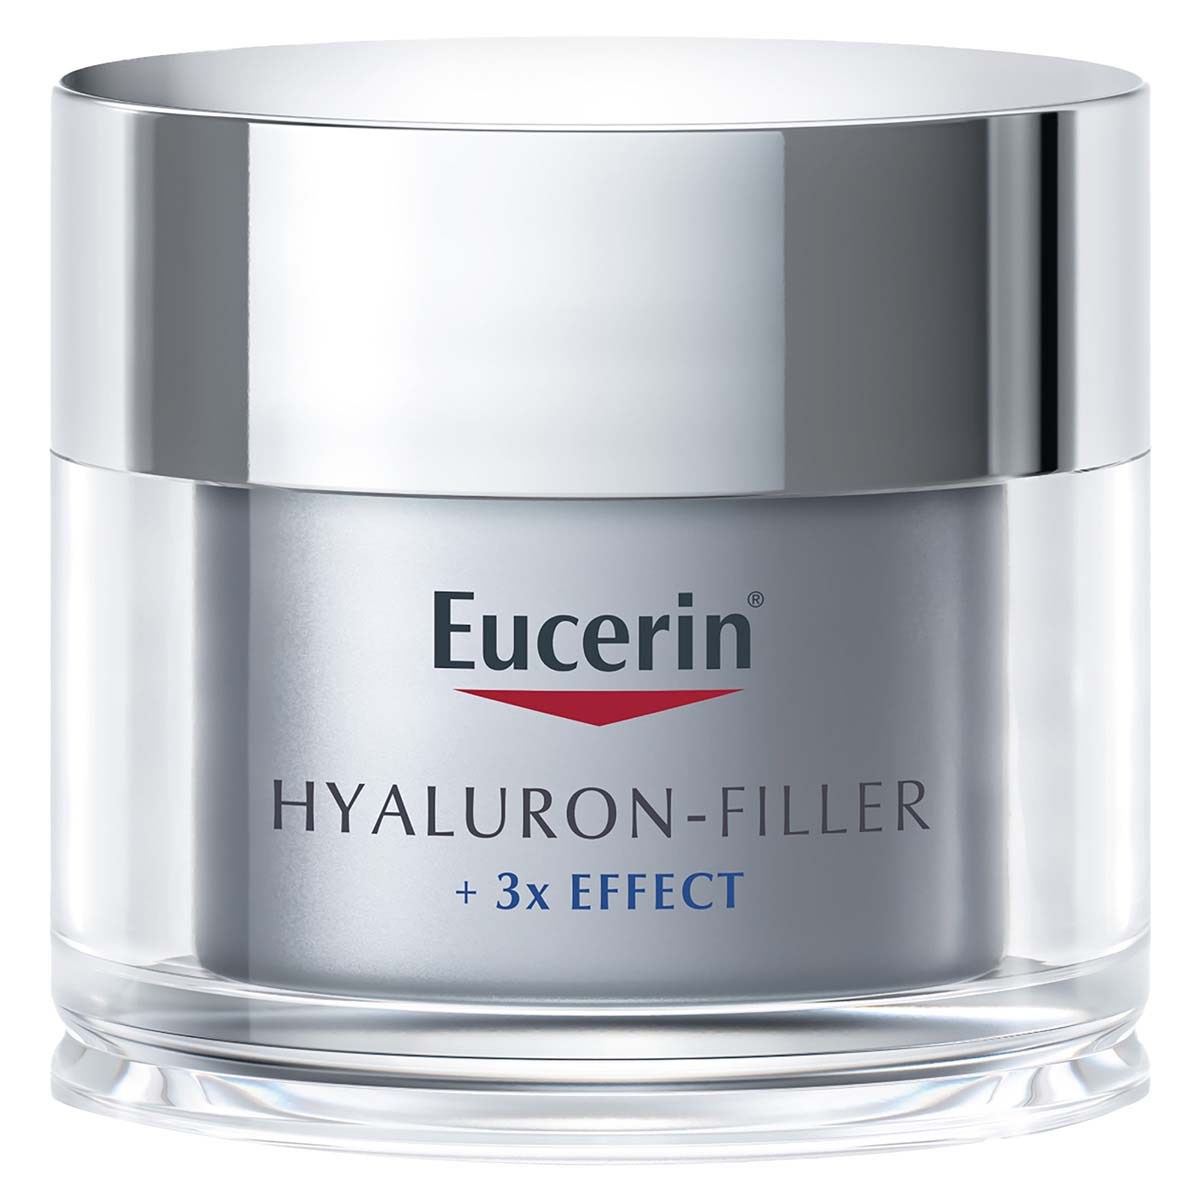 Eucerin crema facial antiarrugas hyaluron-Filler noche 50ml.